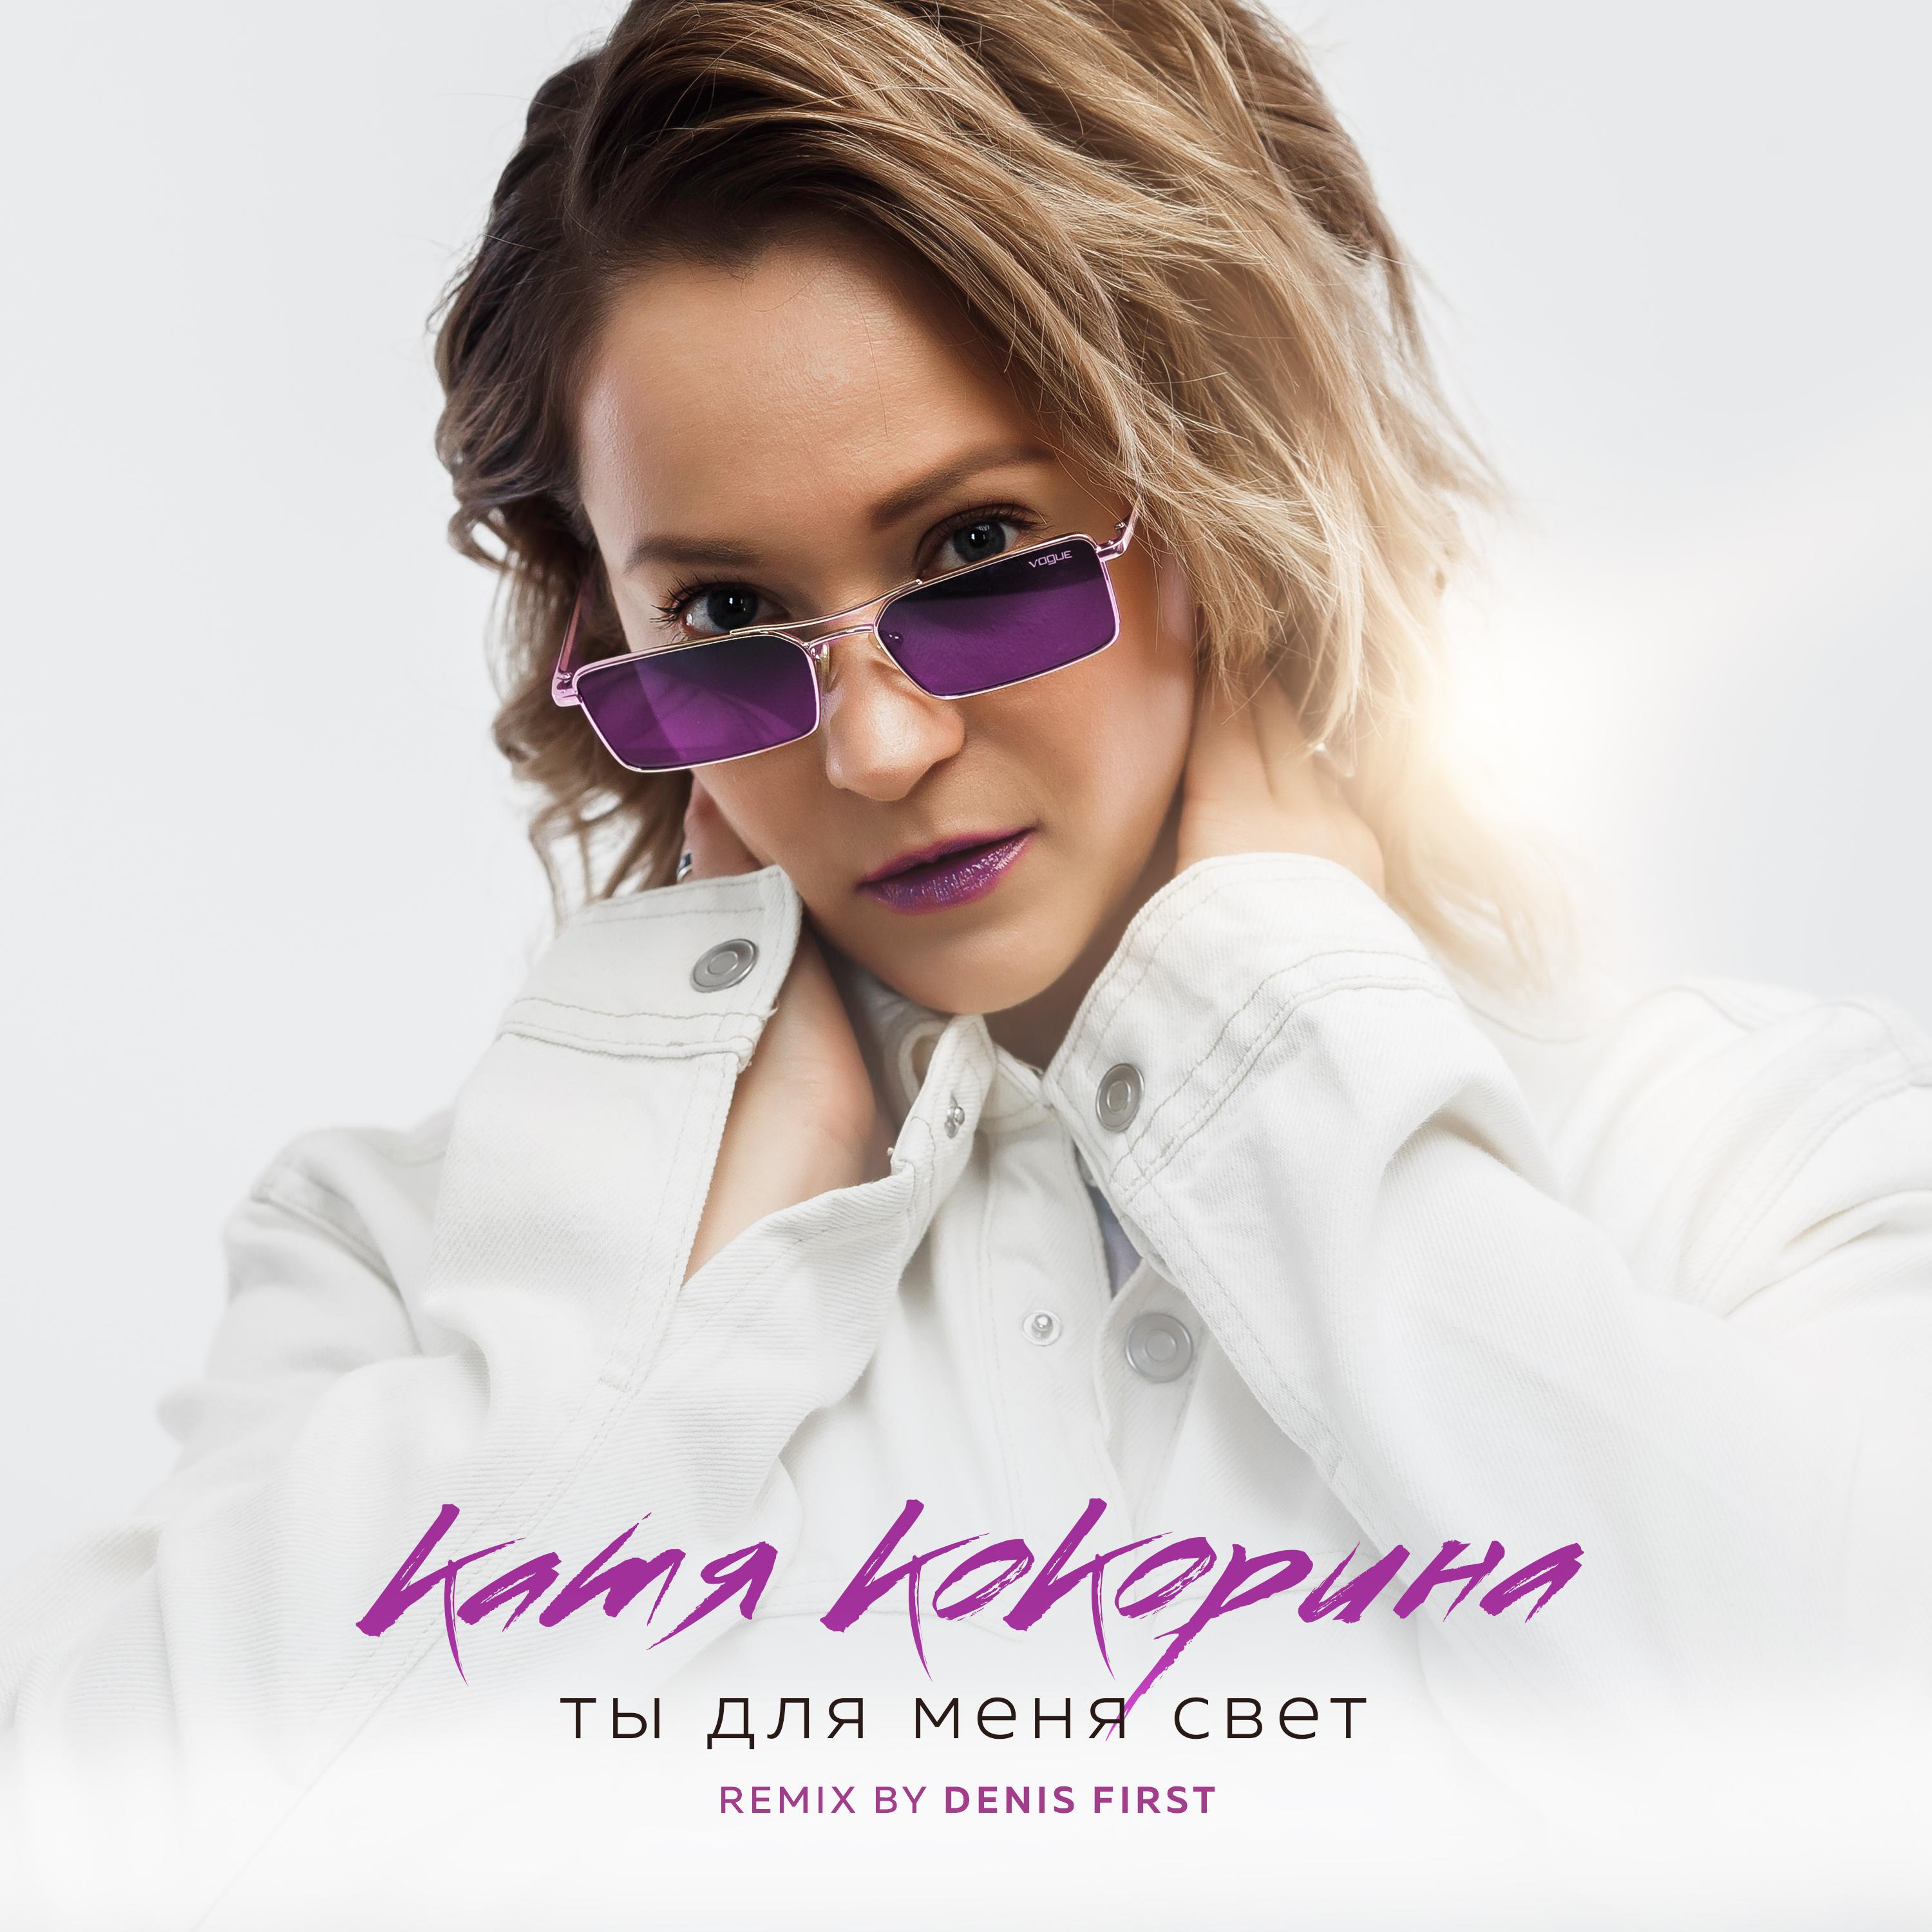 Катя Кокорина все песни в mp3